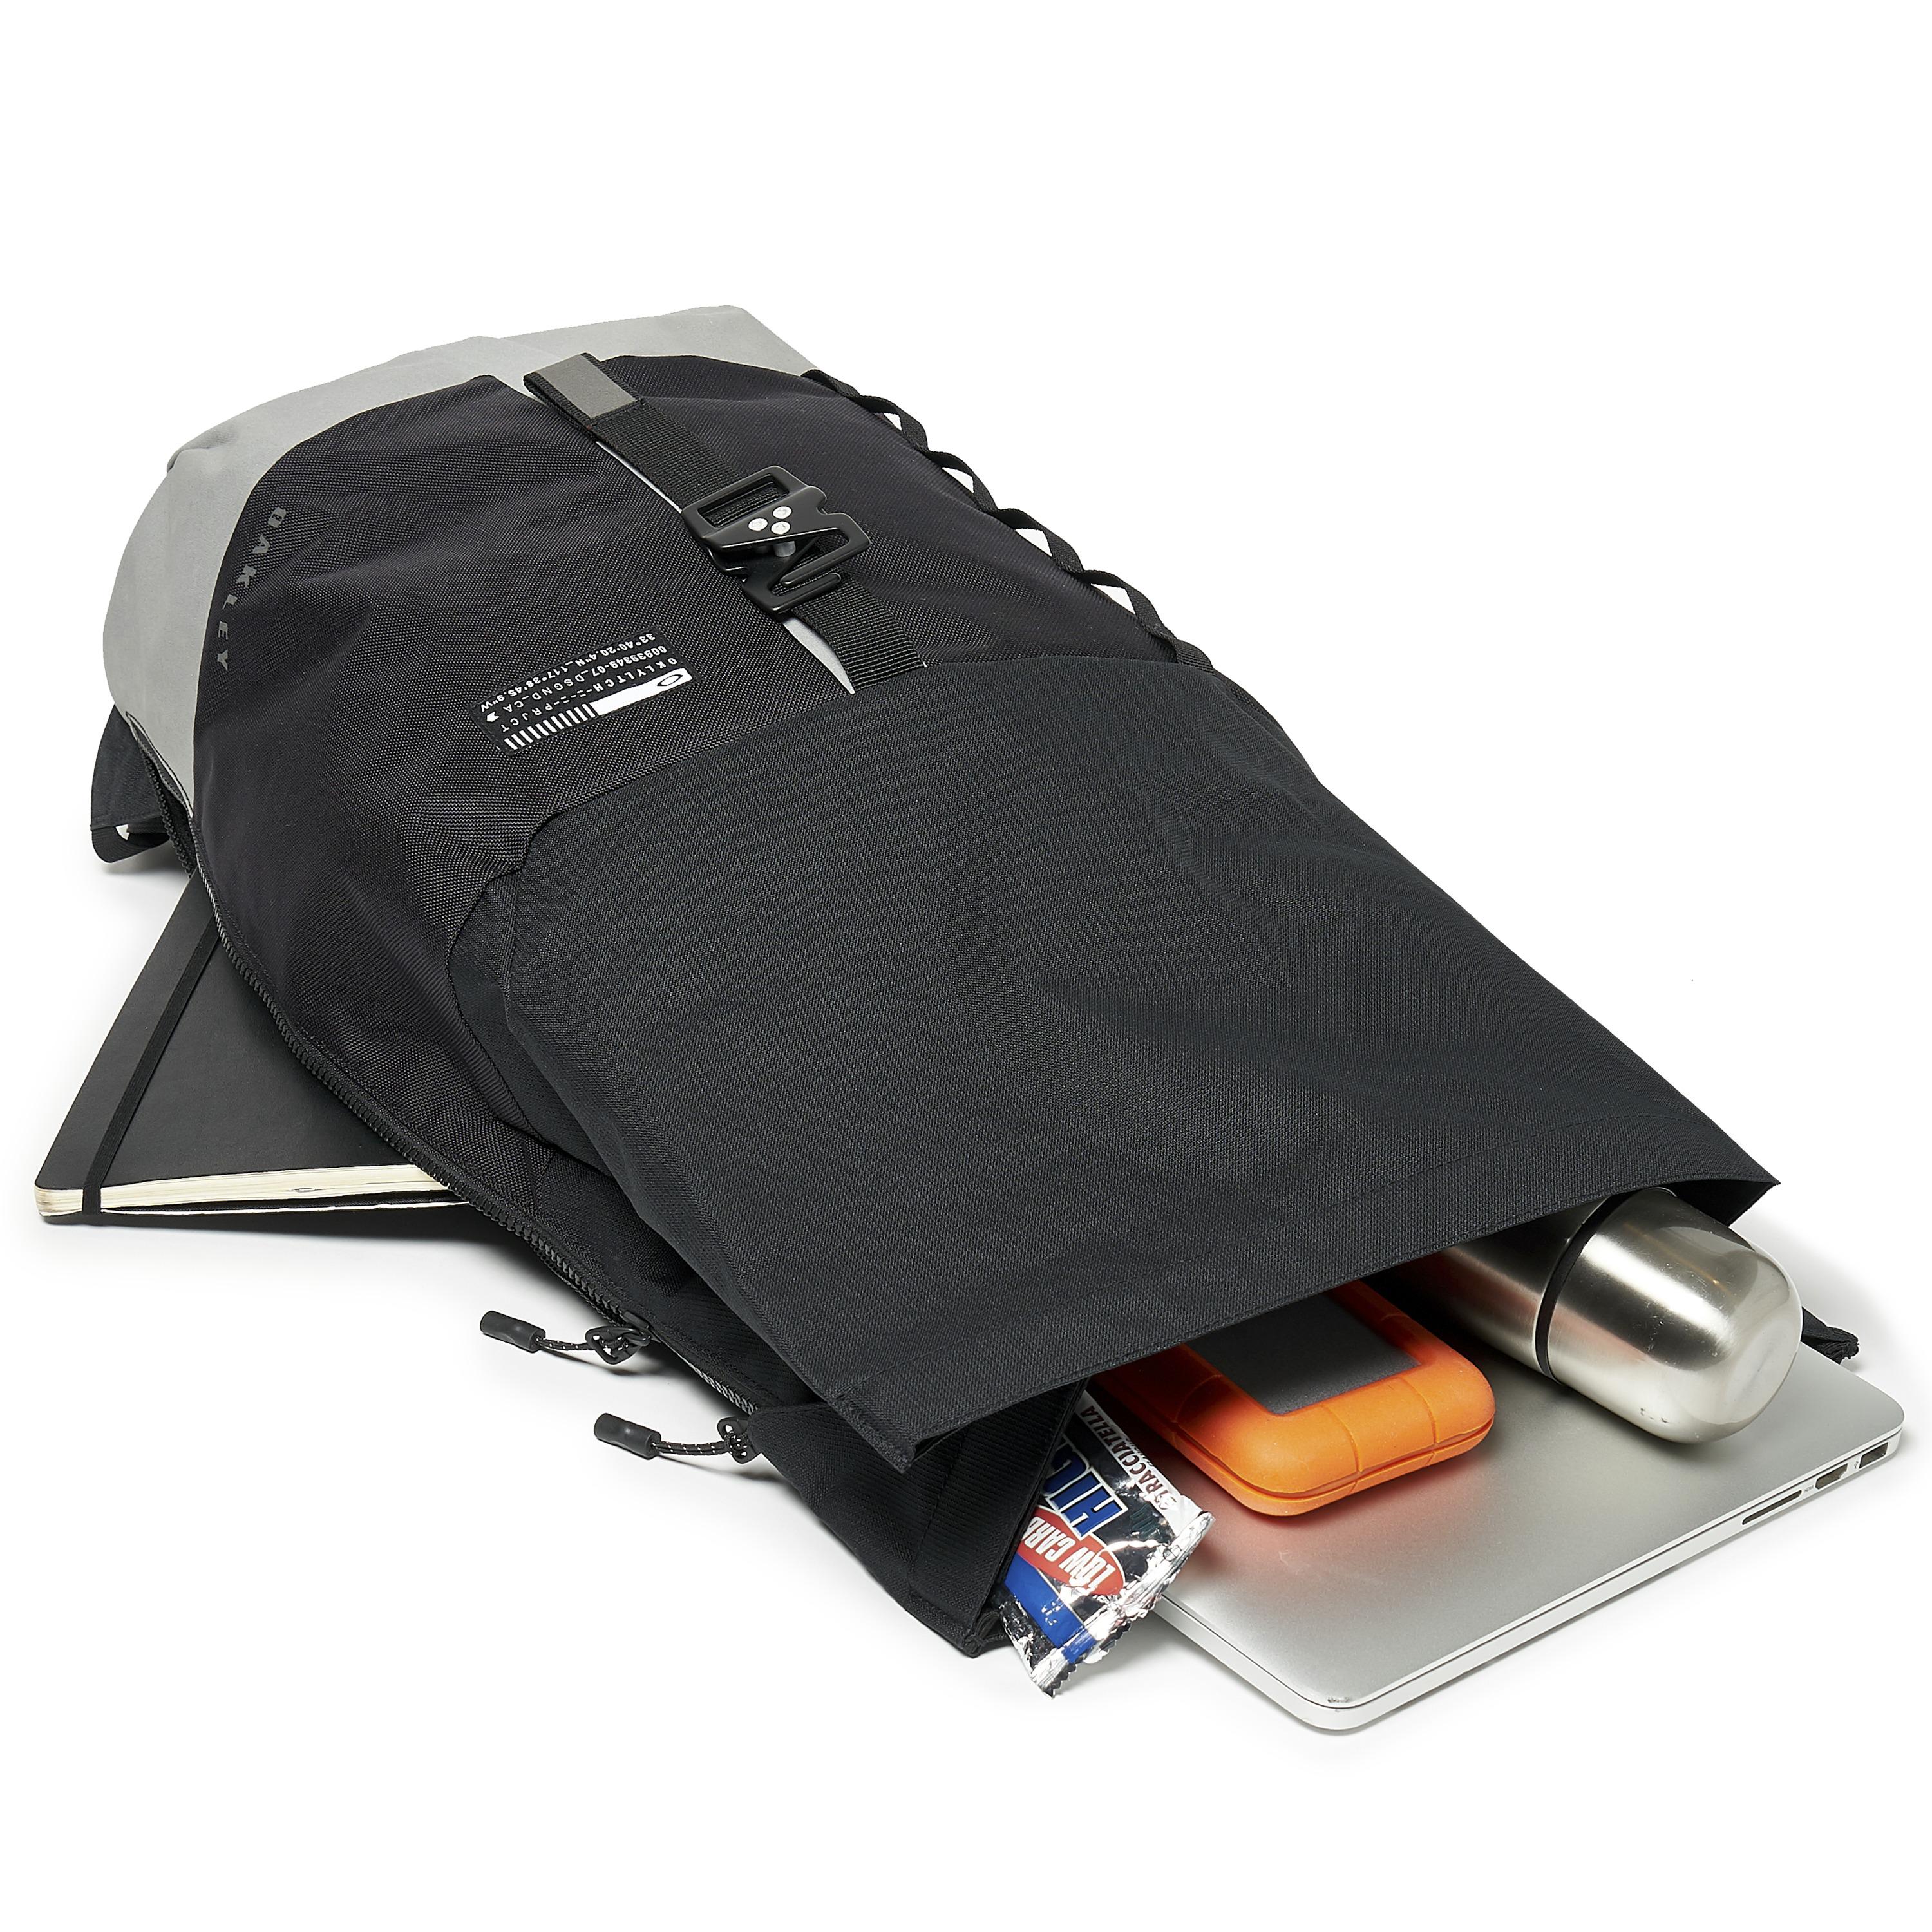 oakley latch backpack